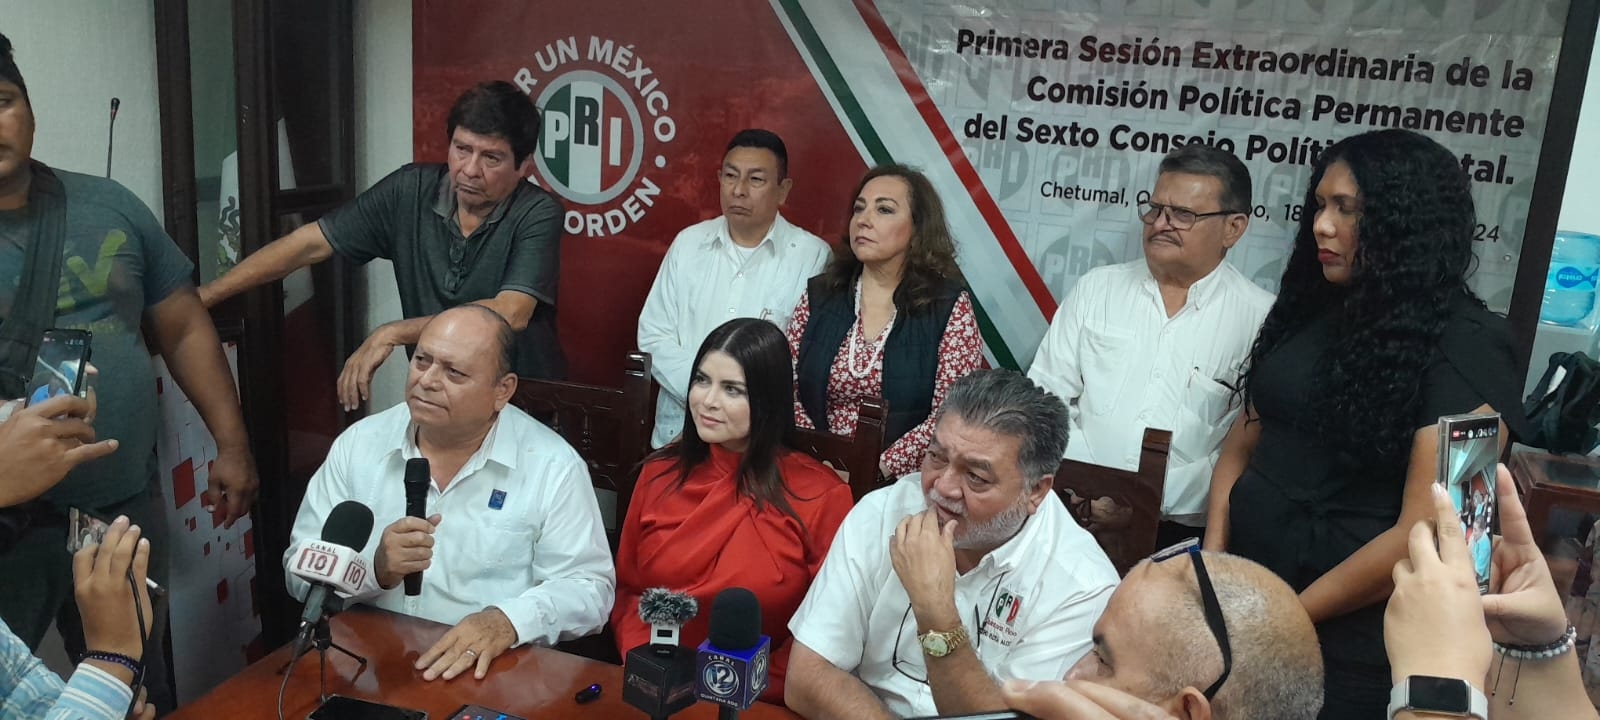 La política de coaliciones se ve sacudida con la traición de María Fernanda Alvear, quien abandona el Partido del Trabajo para unirse al PRI